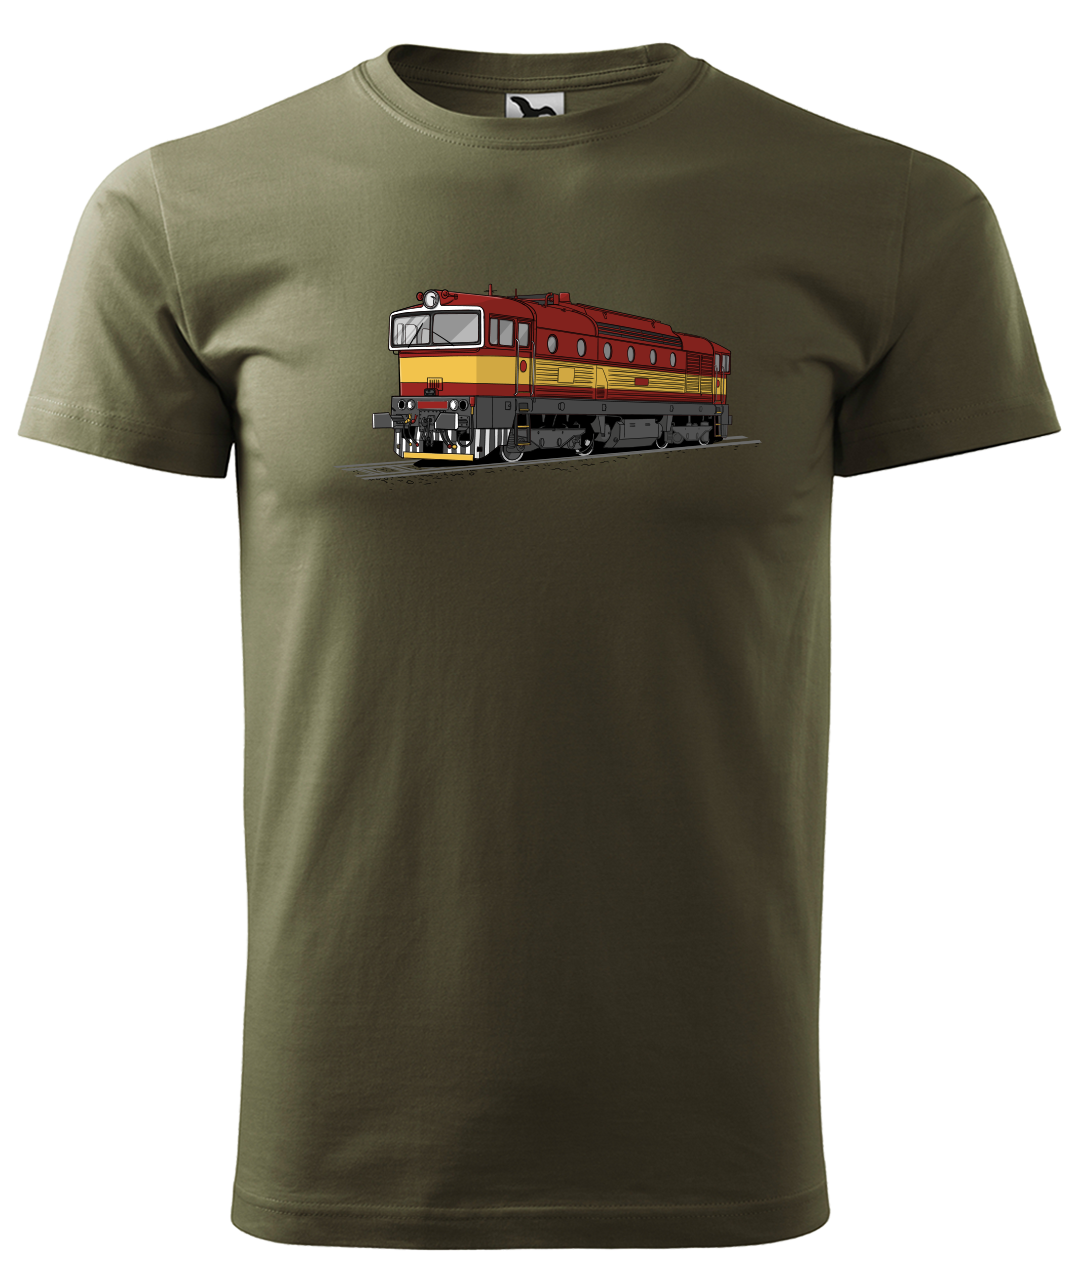 Dětské tričko s vlakem - Barevná lokomotiva BREJLOVEC Velikost: 4 roky / 110 cm, Barva: Military (69)